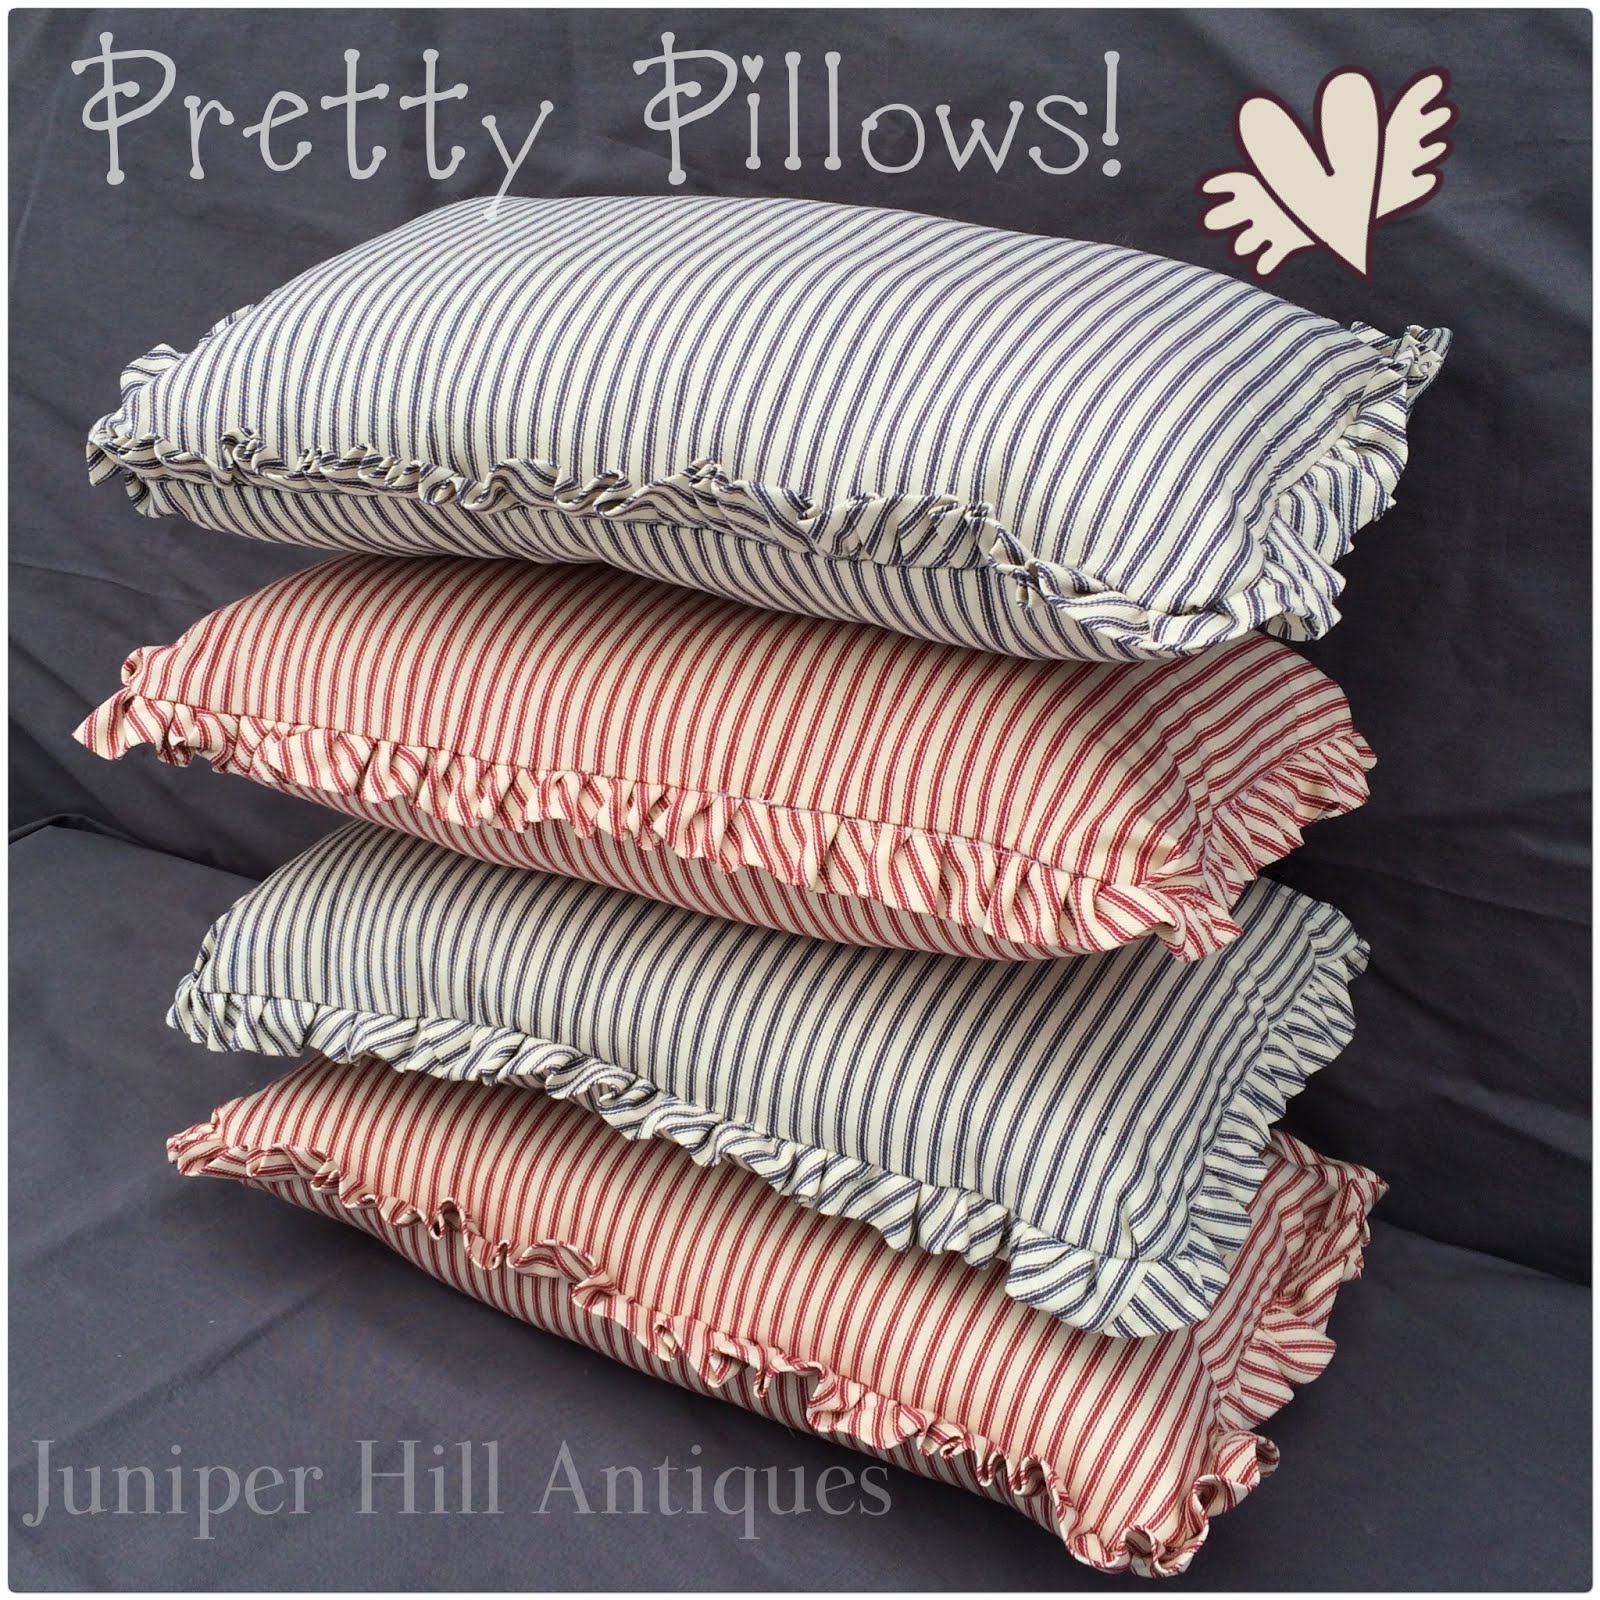 Decorative Pillows!